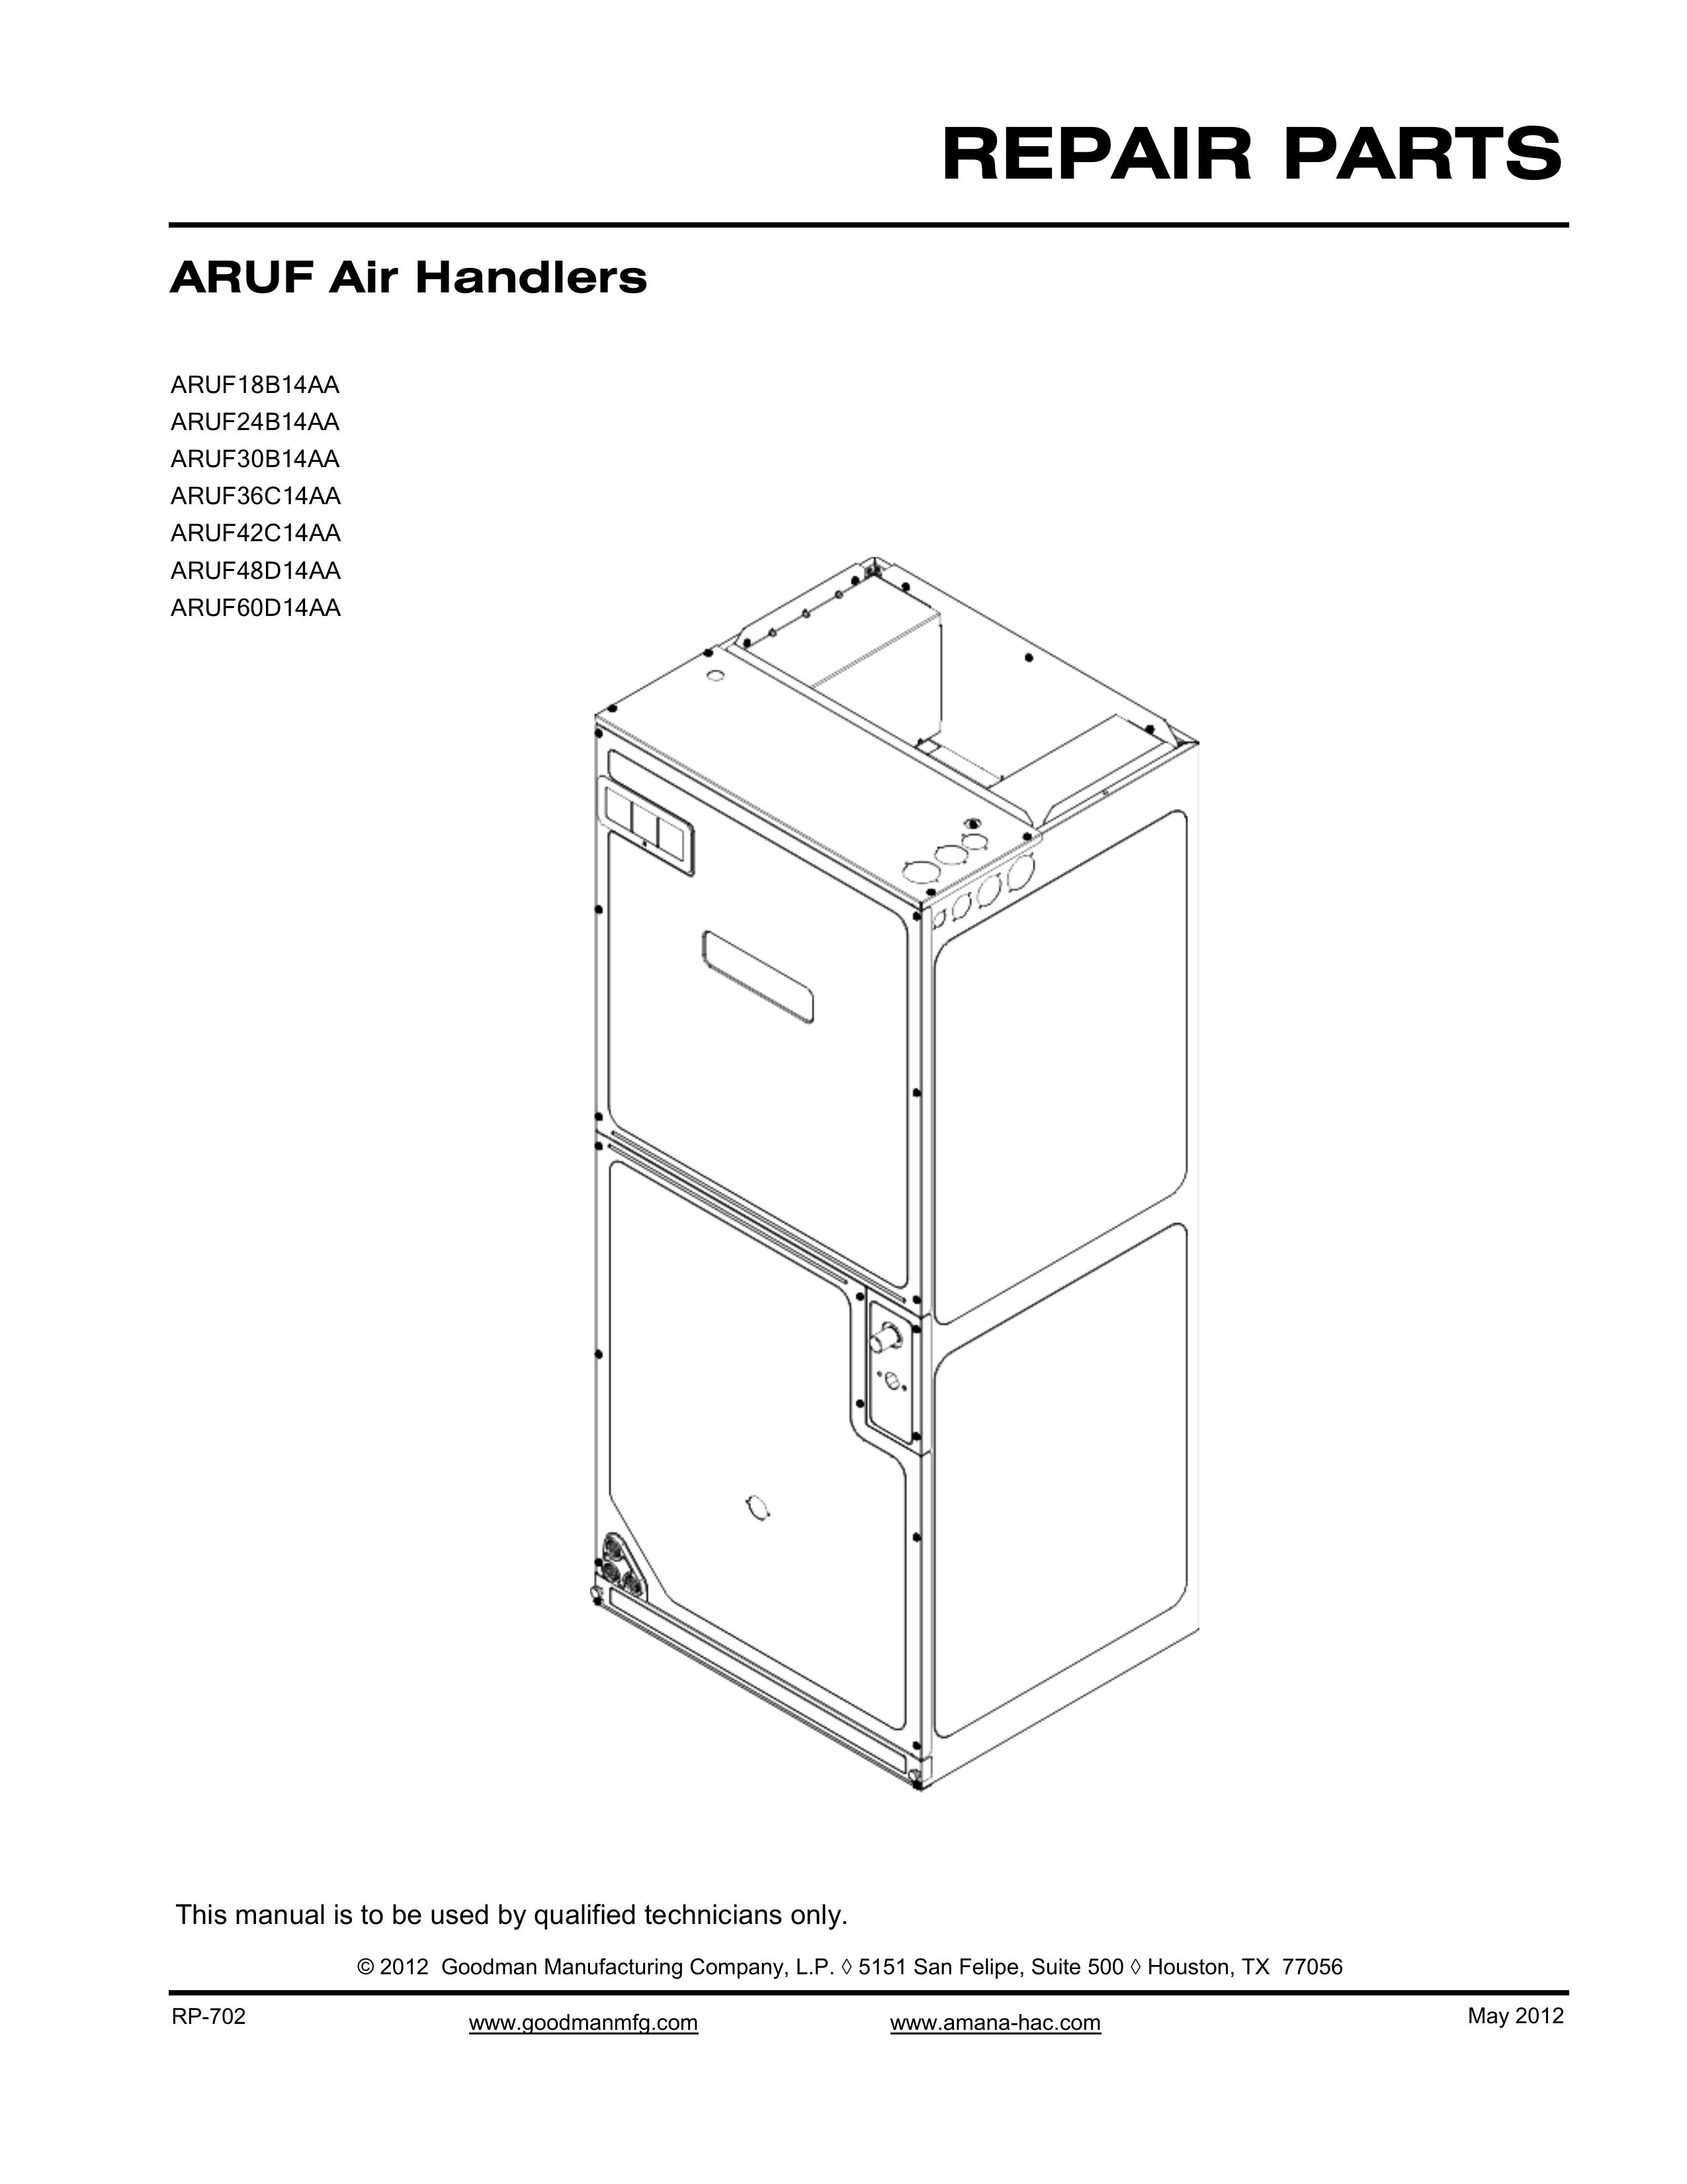 Goodman Mfg ARUF Air Handlers REPAIR PARTS Outdoor Fireplace User Manual